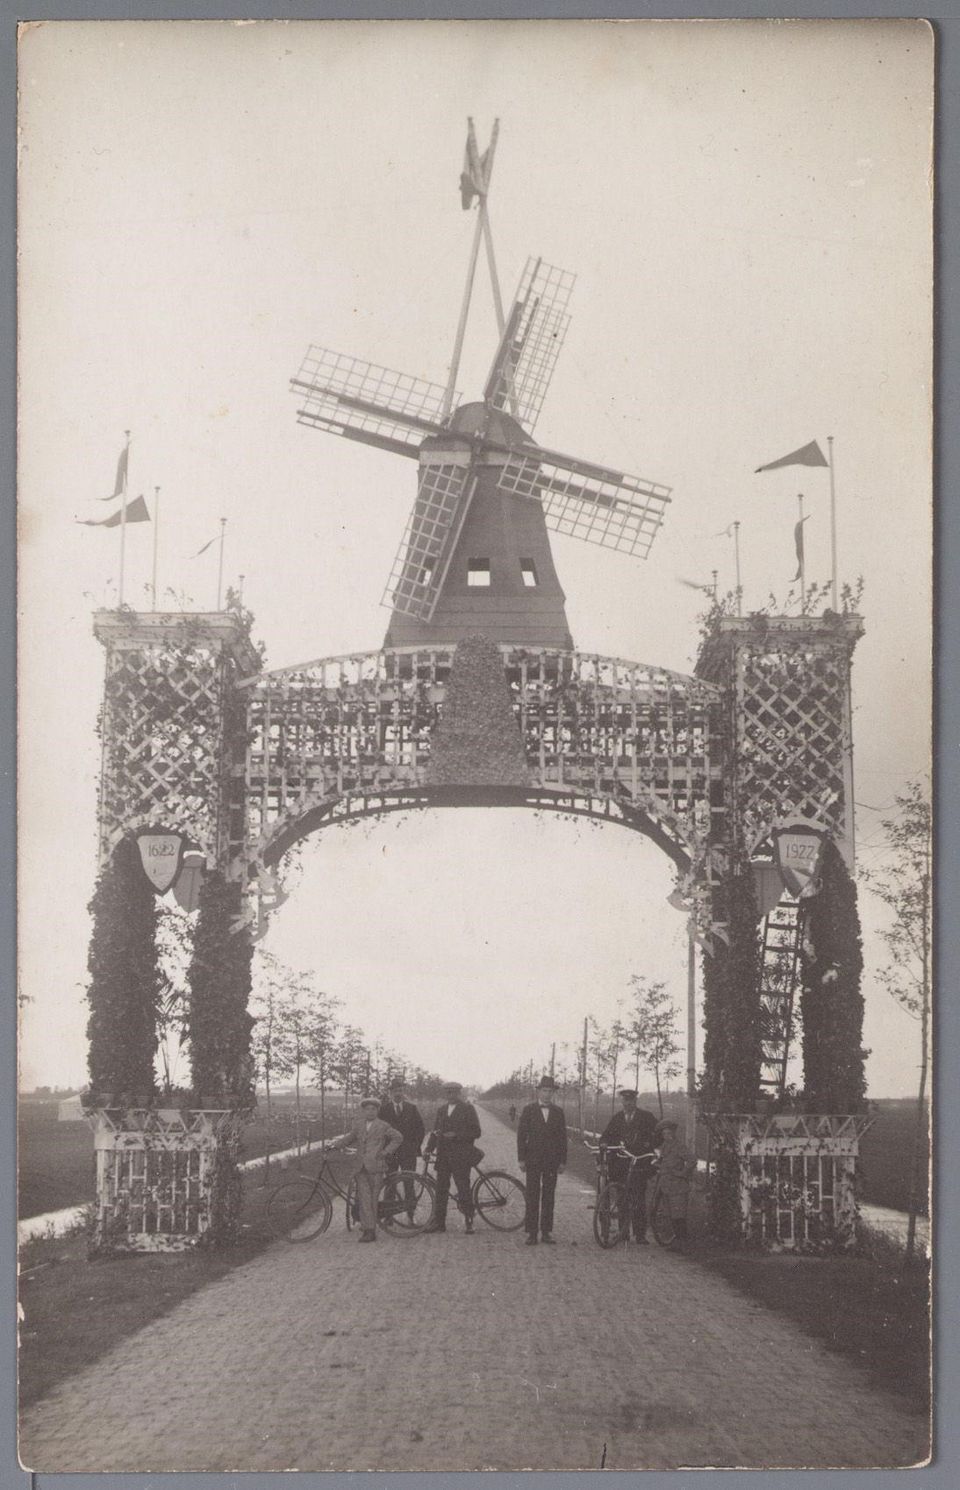 Deze poort stond aan de Purmerenderweg, vlak bij het kruispunt met de Westerweg. De foto is gemaakt door M.B. van Baar en is genomen in de richting van Purmerend.